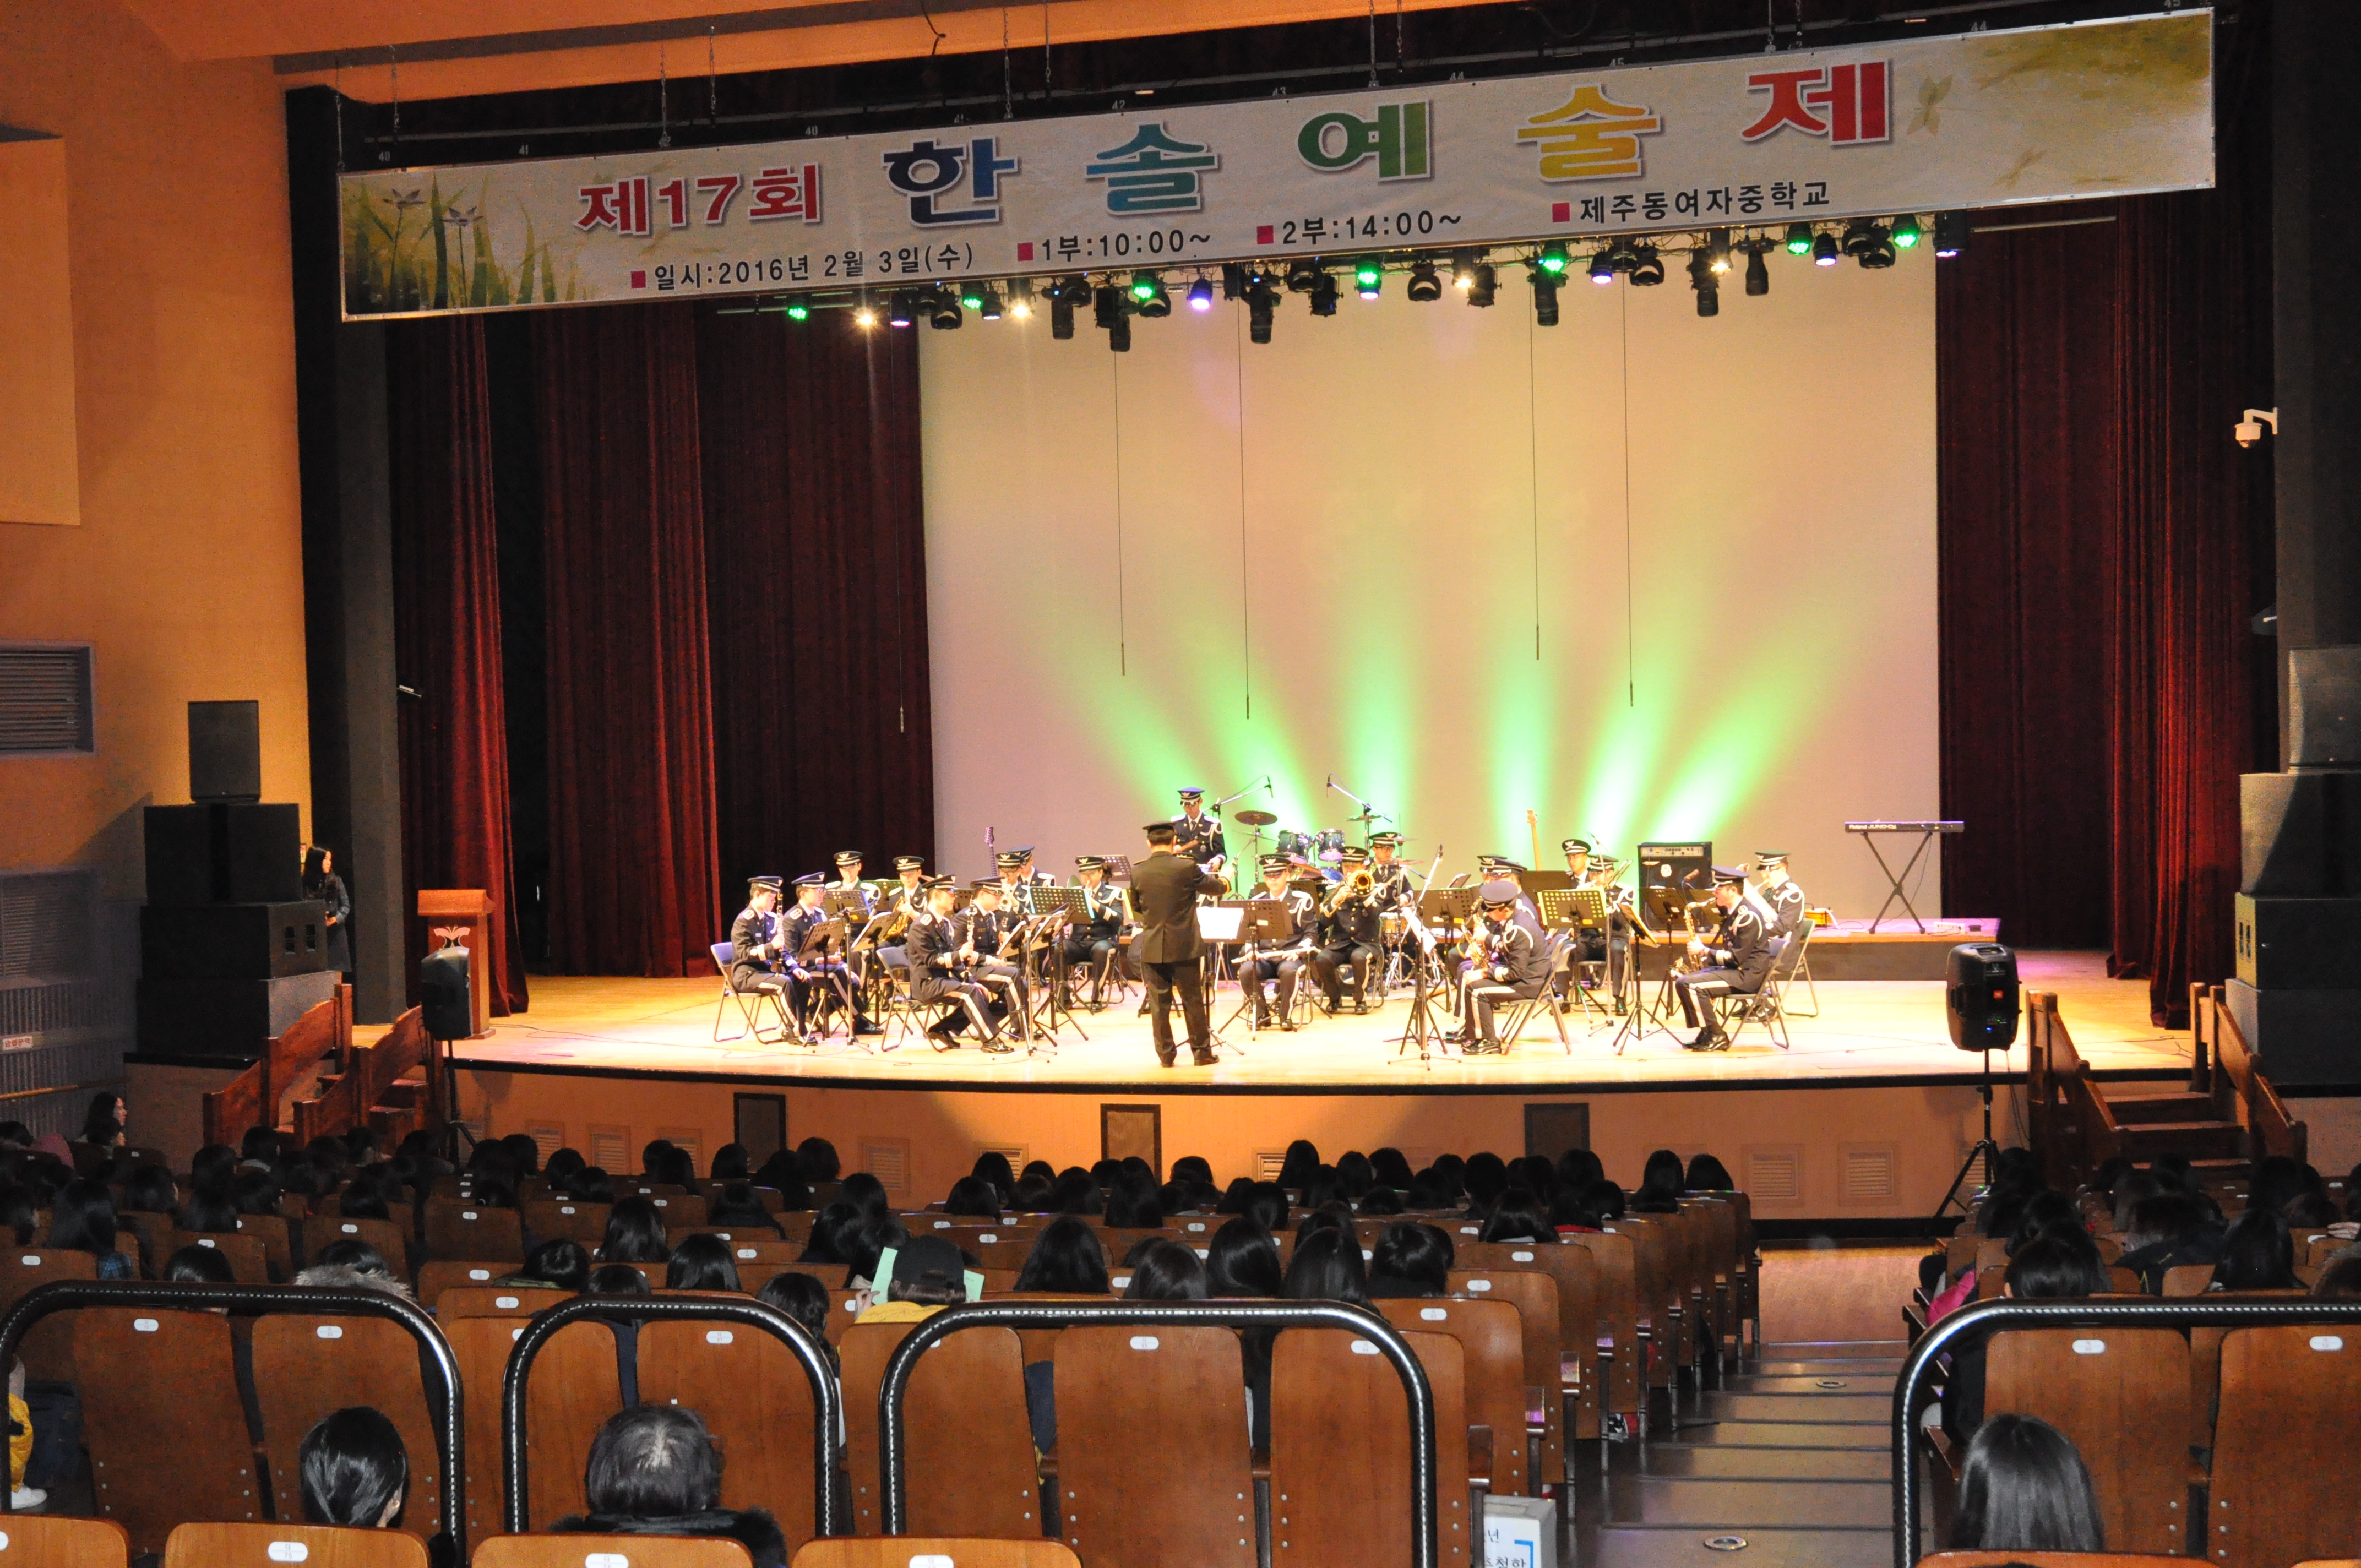 경찰악대, 「제주동여중학교 졸업식 행사(제17회 한솔예술제)」 축하 공연